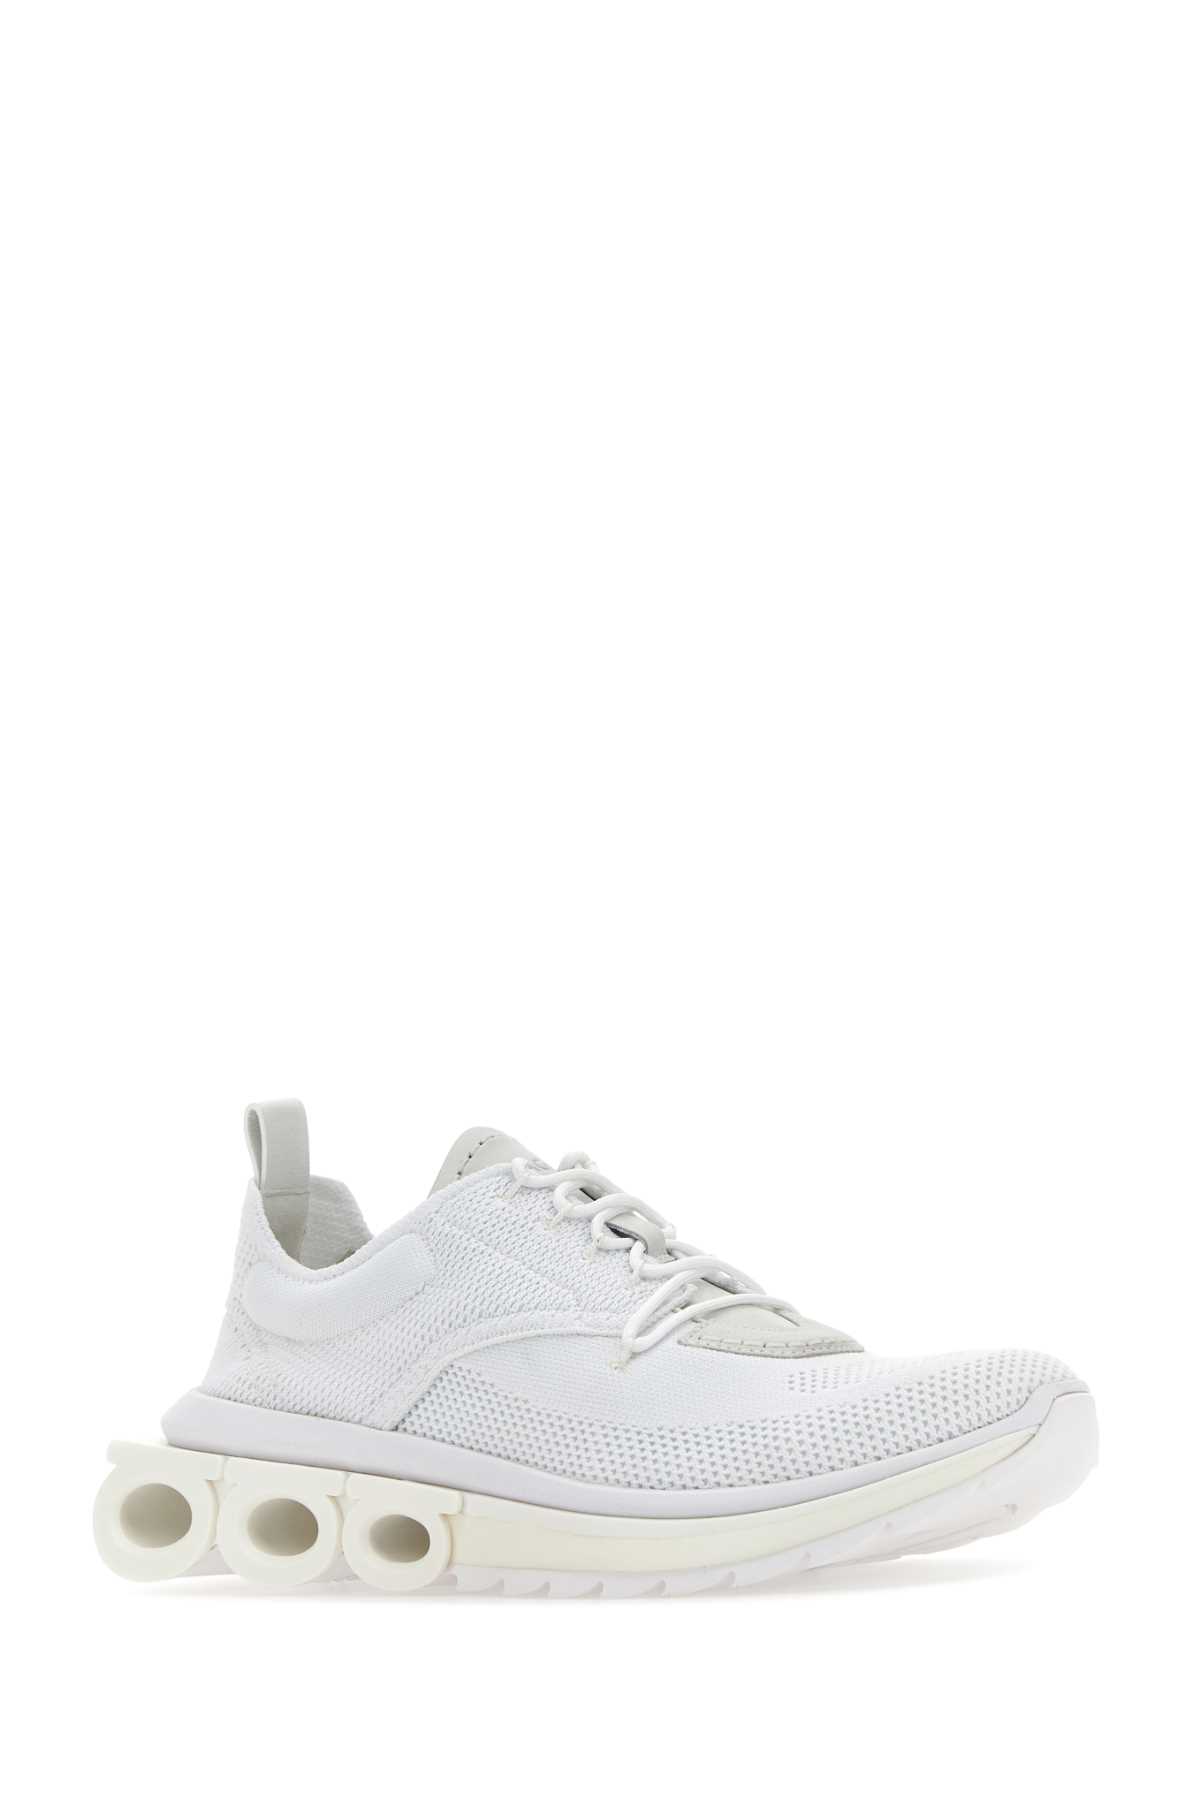 Ferragamo White Tech Knit Nima Sneakers In Bianco